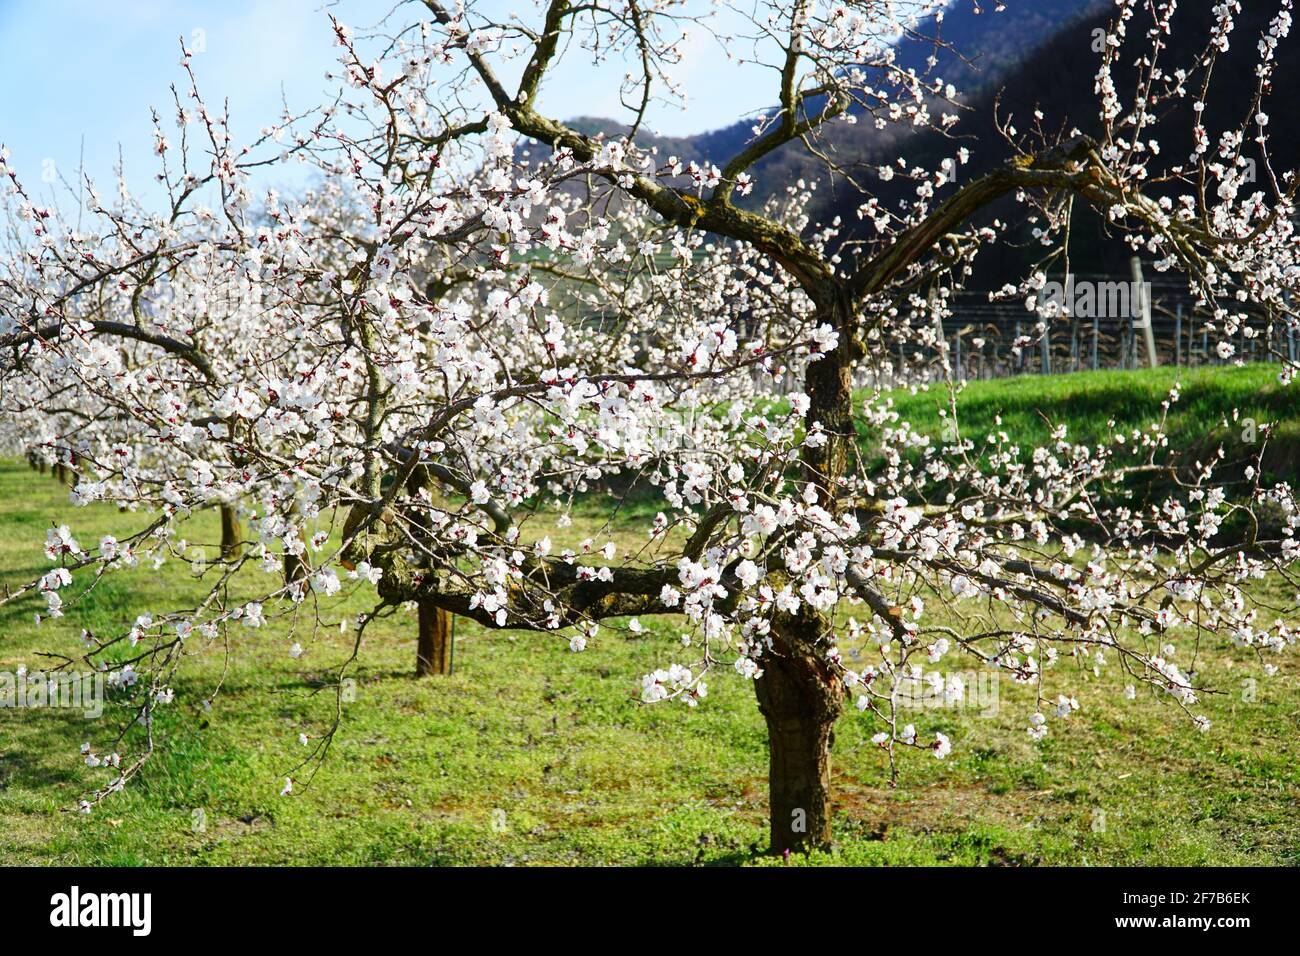 Printemps : fleurs d'abricot (patrimoine culturel mondial) à Wachau (Autriche) Banque D'Images